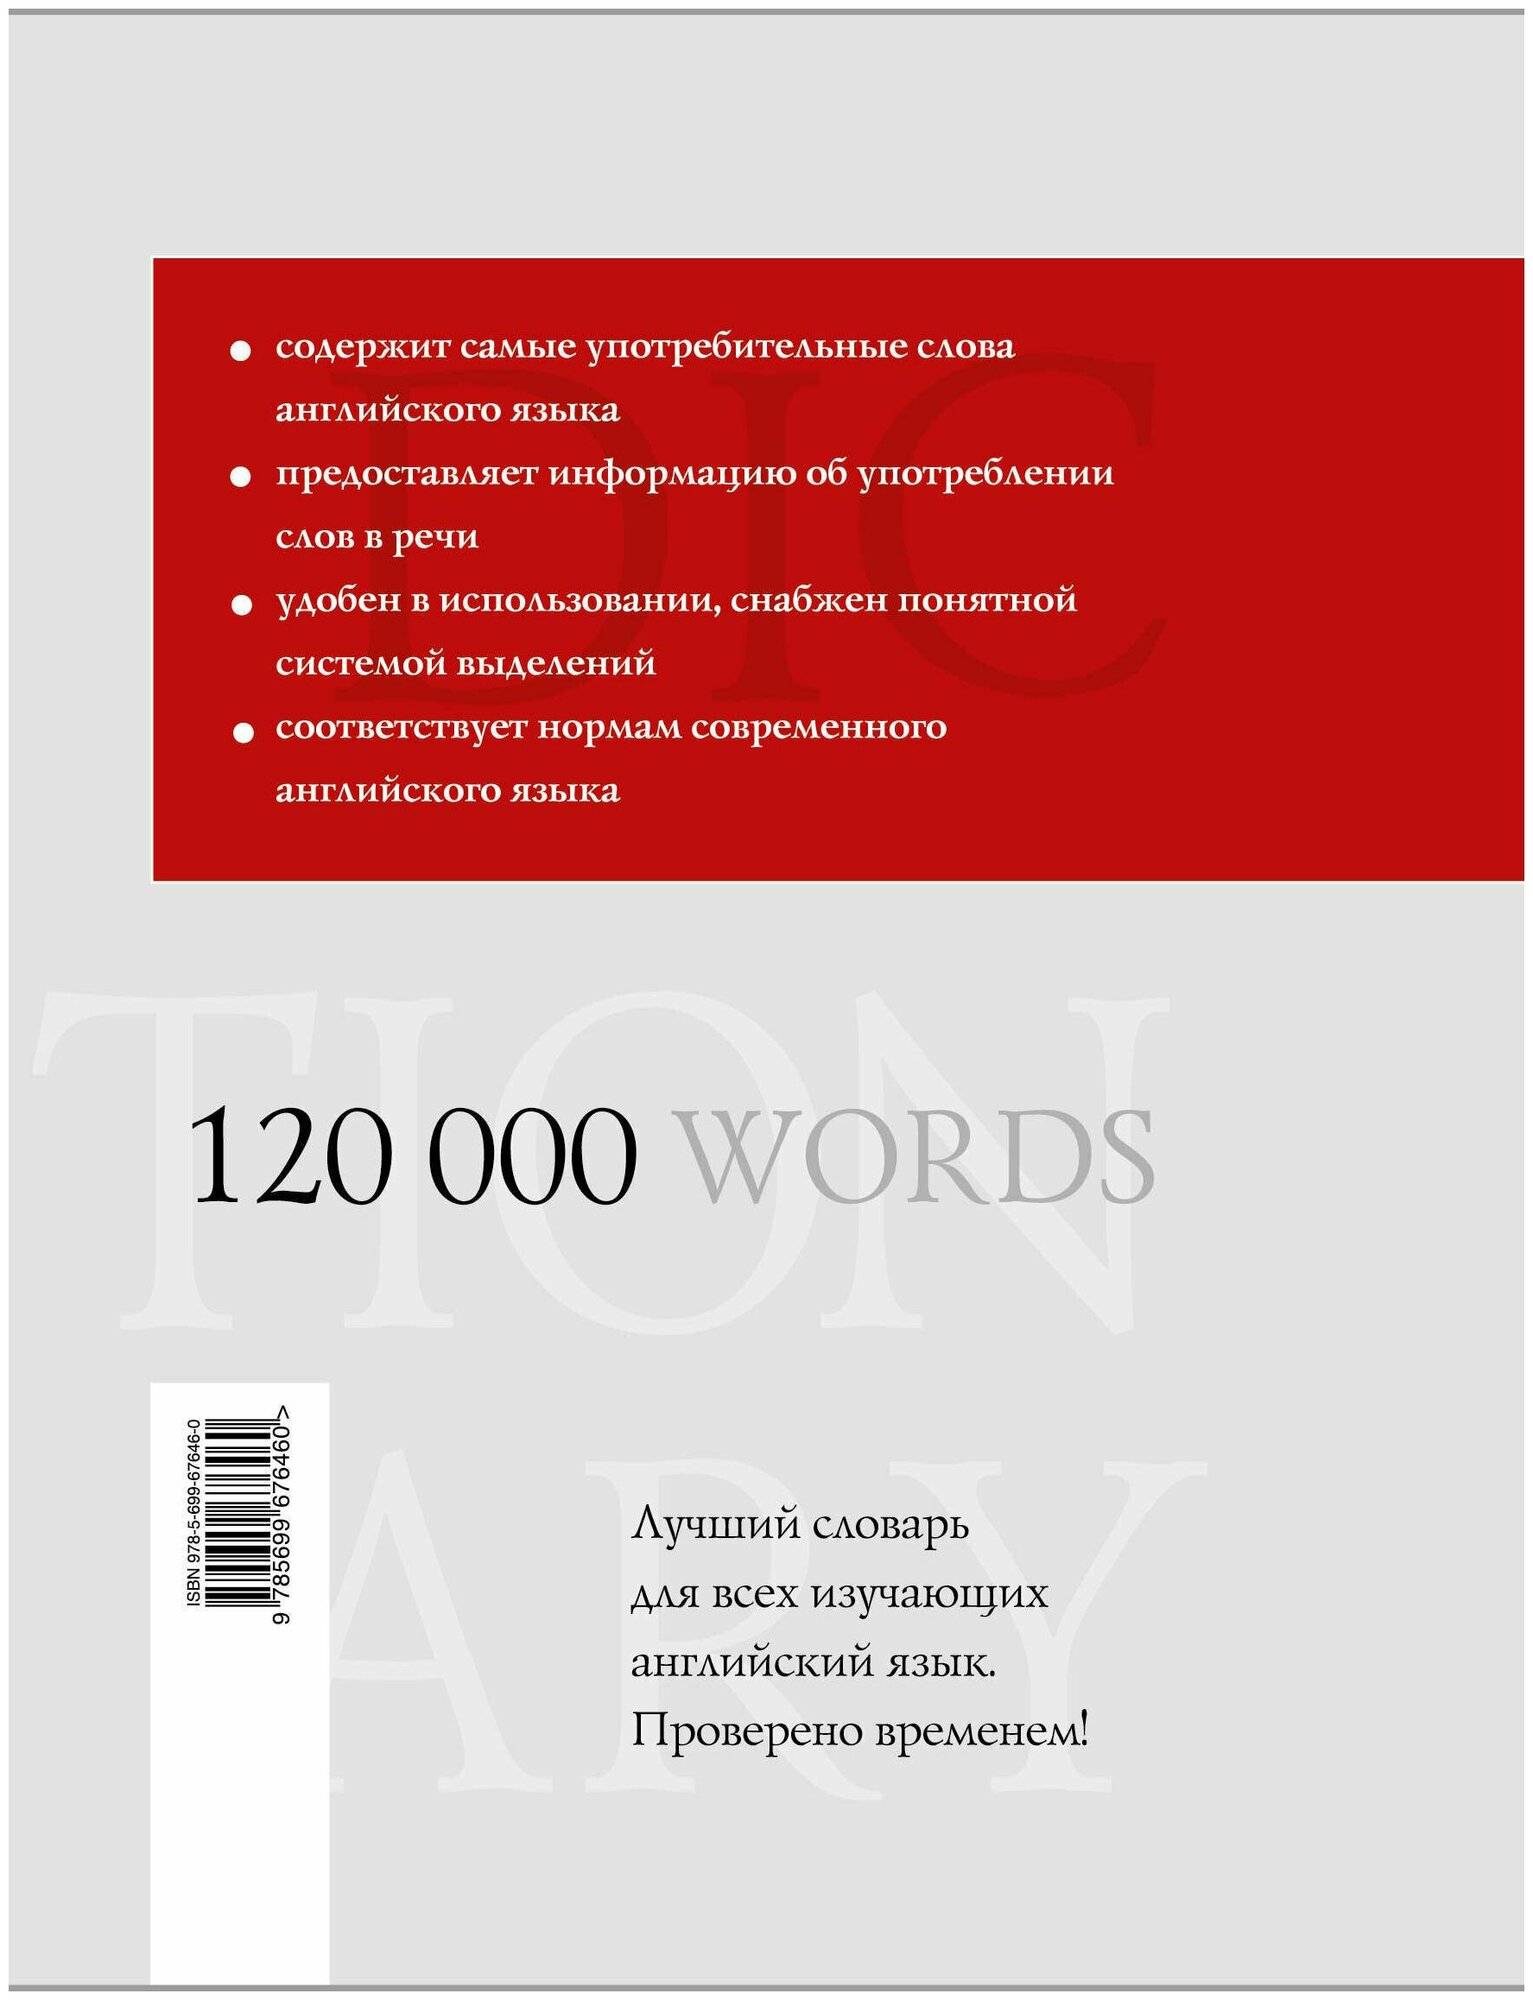 Мюллер В. К. Большой русско-английский словарь. 120 000 слов и выражений. Библиотека словарей Мюллера